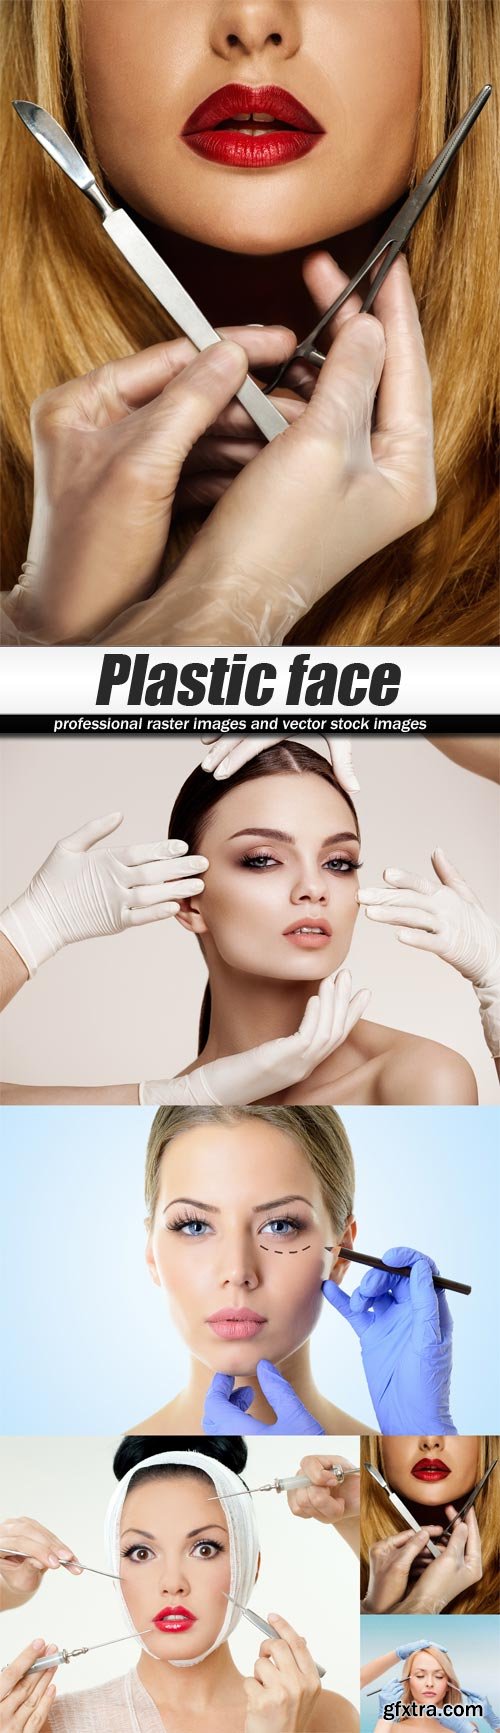 Plastic face